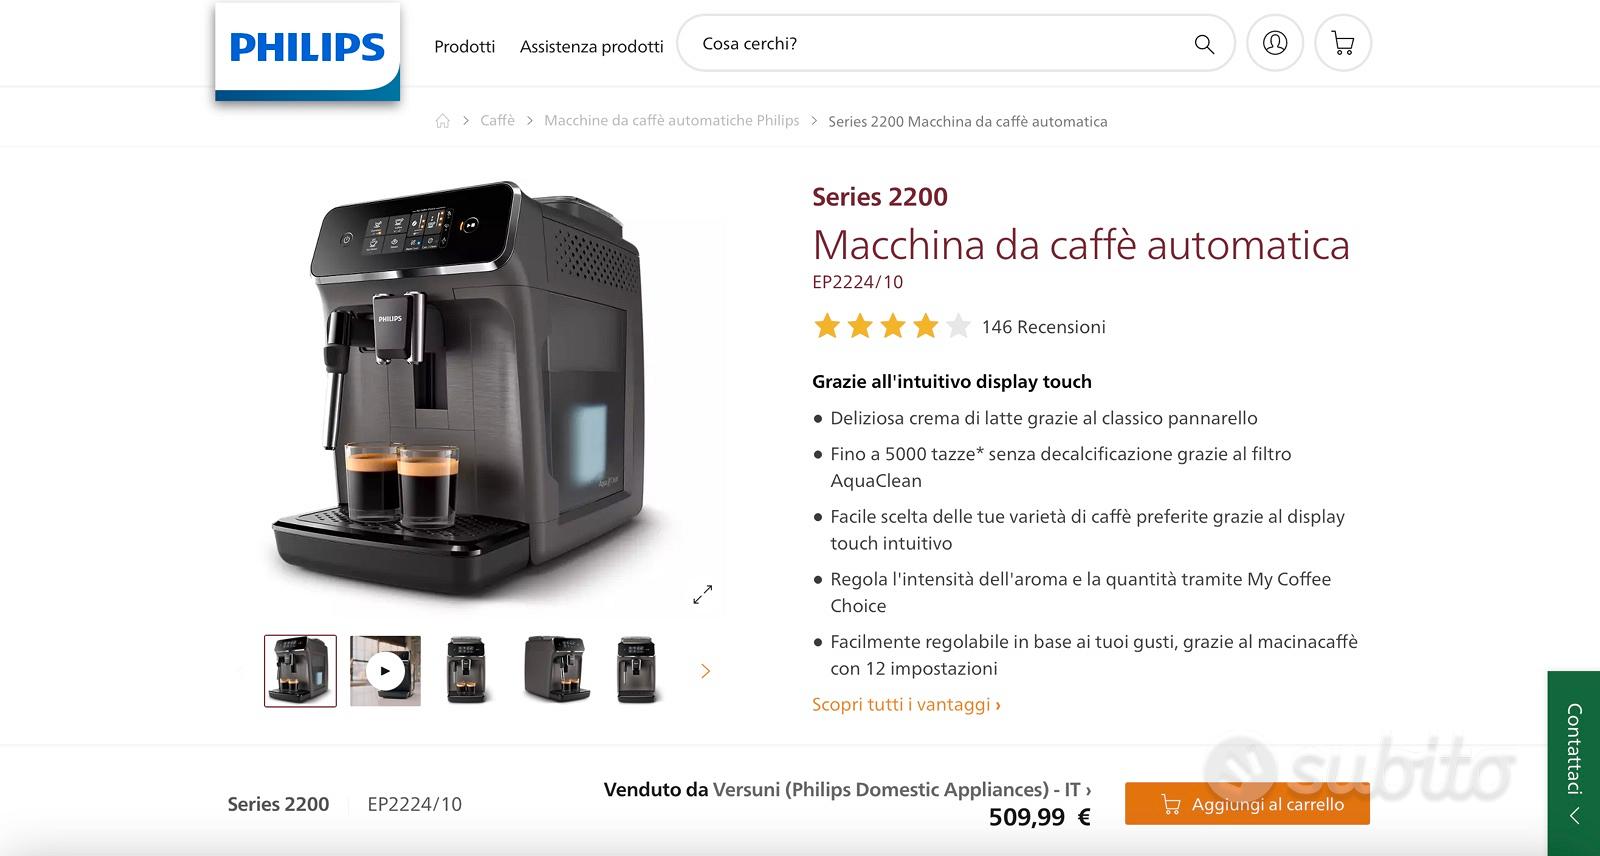 Series 2200 Macchina da caffè automatica EP2224/10